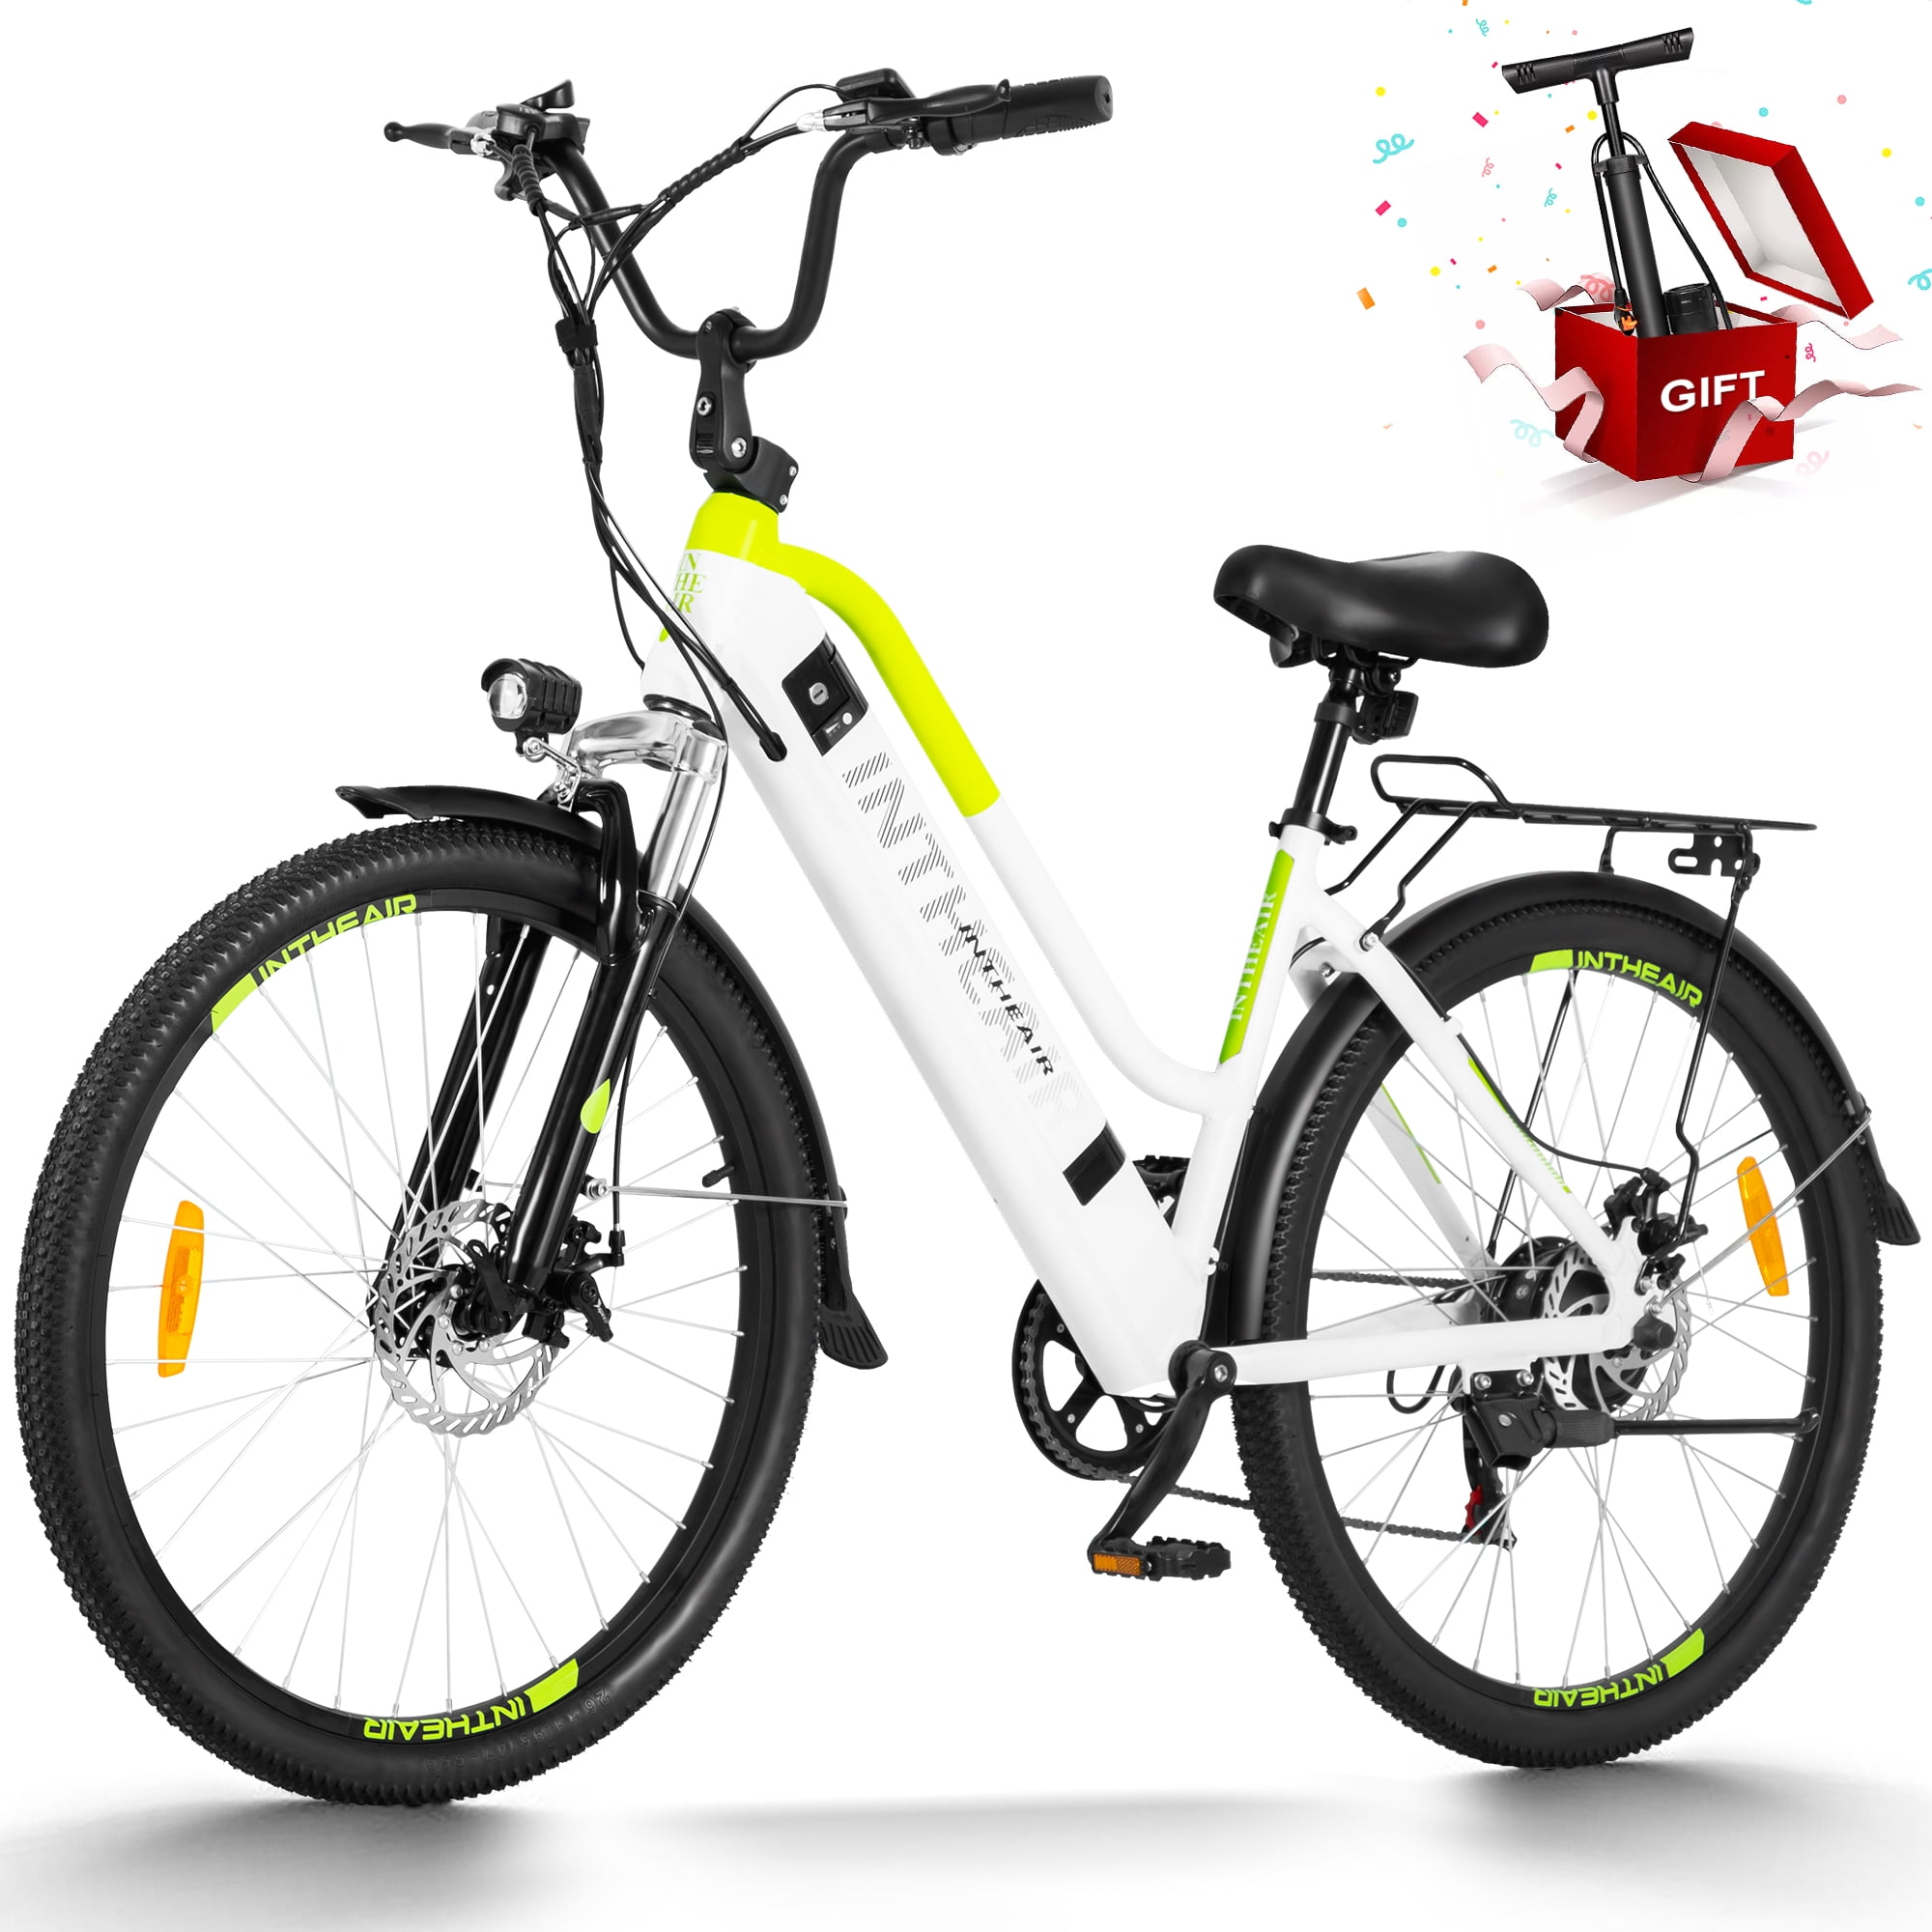 INTHEAIR Electric Bike, E-Bike for Adults 26/